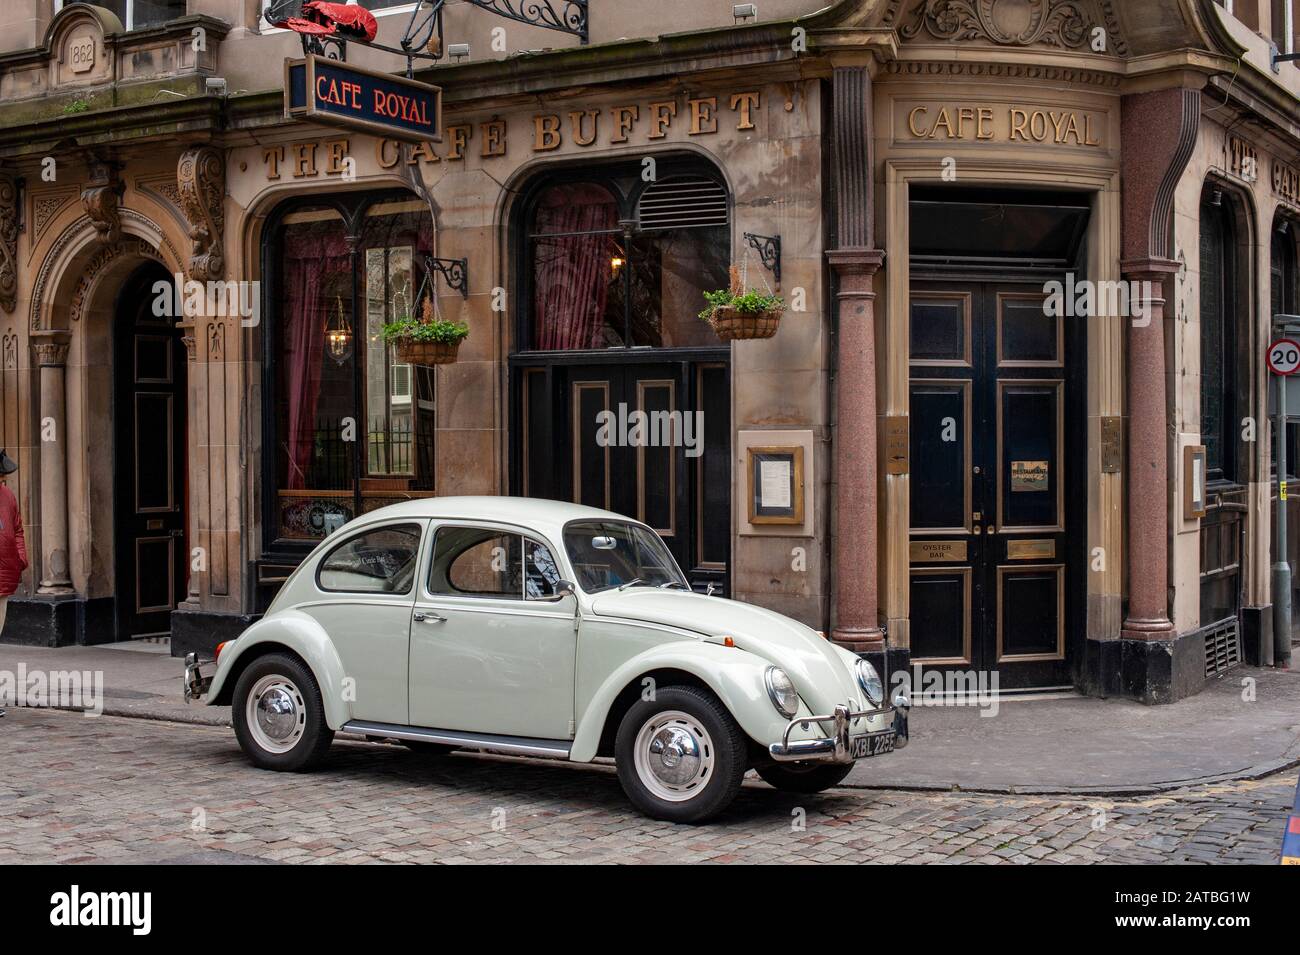 Volkswagen Beetle parcheggiata di fronte al Cafe Royal di Edimburgo. Fotografia di viaggio/paesaggio urbano di Edimburgo di Pep Masip. Foto Stock